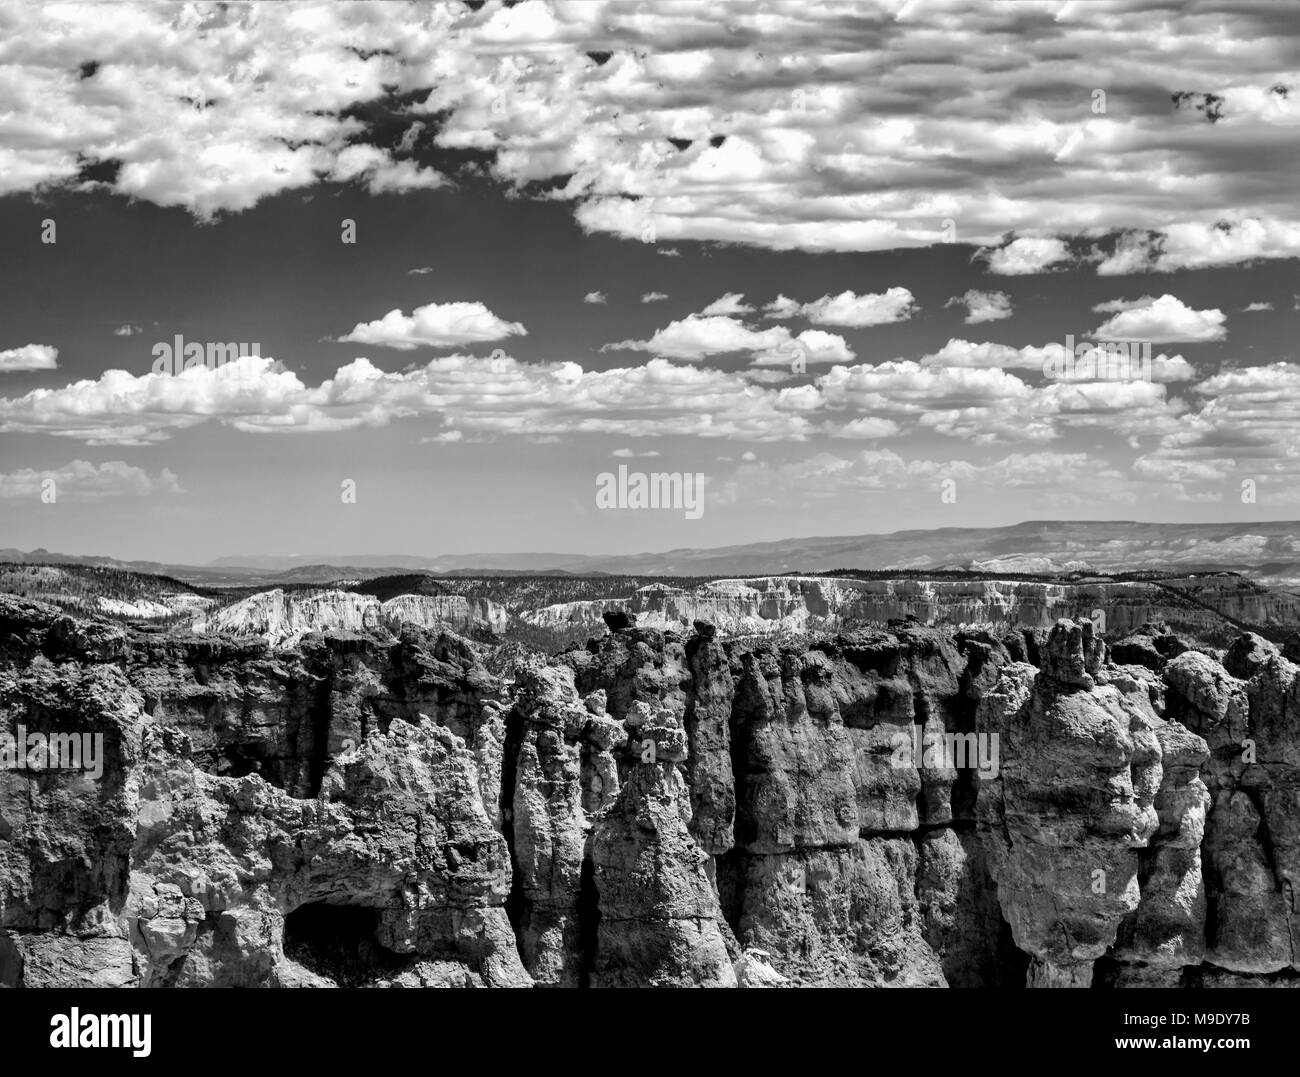 Beaux clochers de grès et des vallées, des canyons érodés sous ciel clair avec des nuages. Image en noir et blanc. Banque D'Images